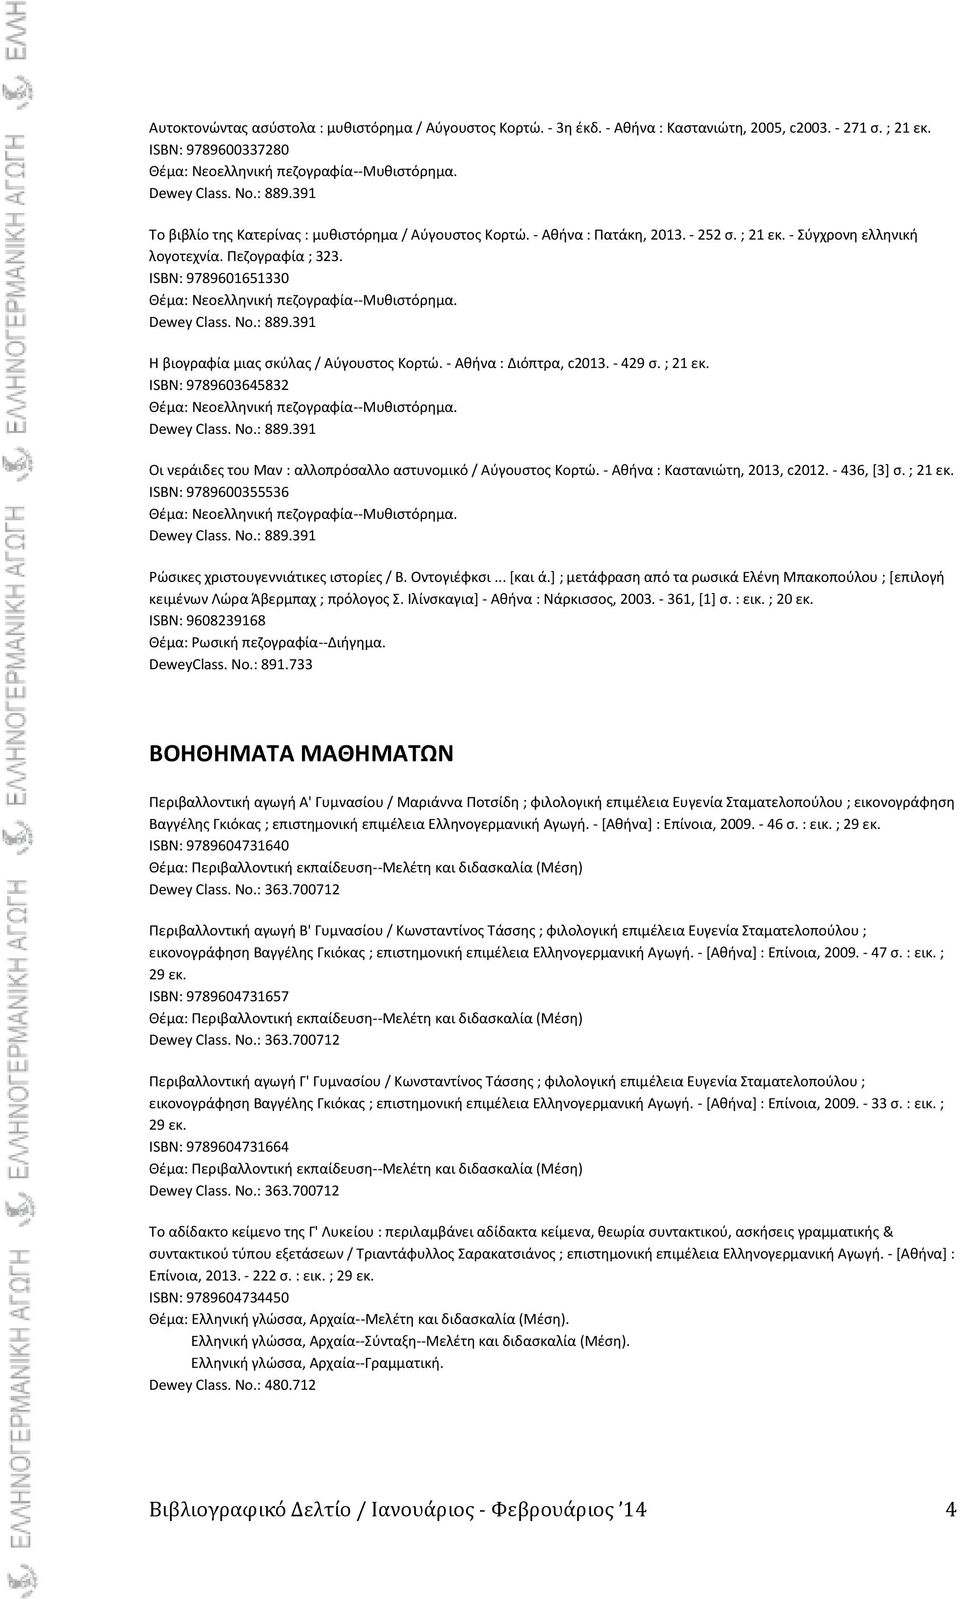 - Ακινα : Καςτανιϊτθ, 2013, c2012. - 436, *3+ ς. ; 21 εκ. ISBN: 9789600355536 91 Ρϊςικεσ χριςτουγεννιάτικεσ ιςτορίεσ / Β. Οντογιζφκςι... *και ά.